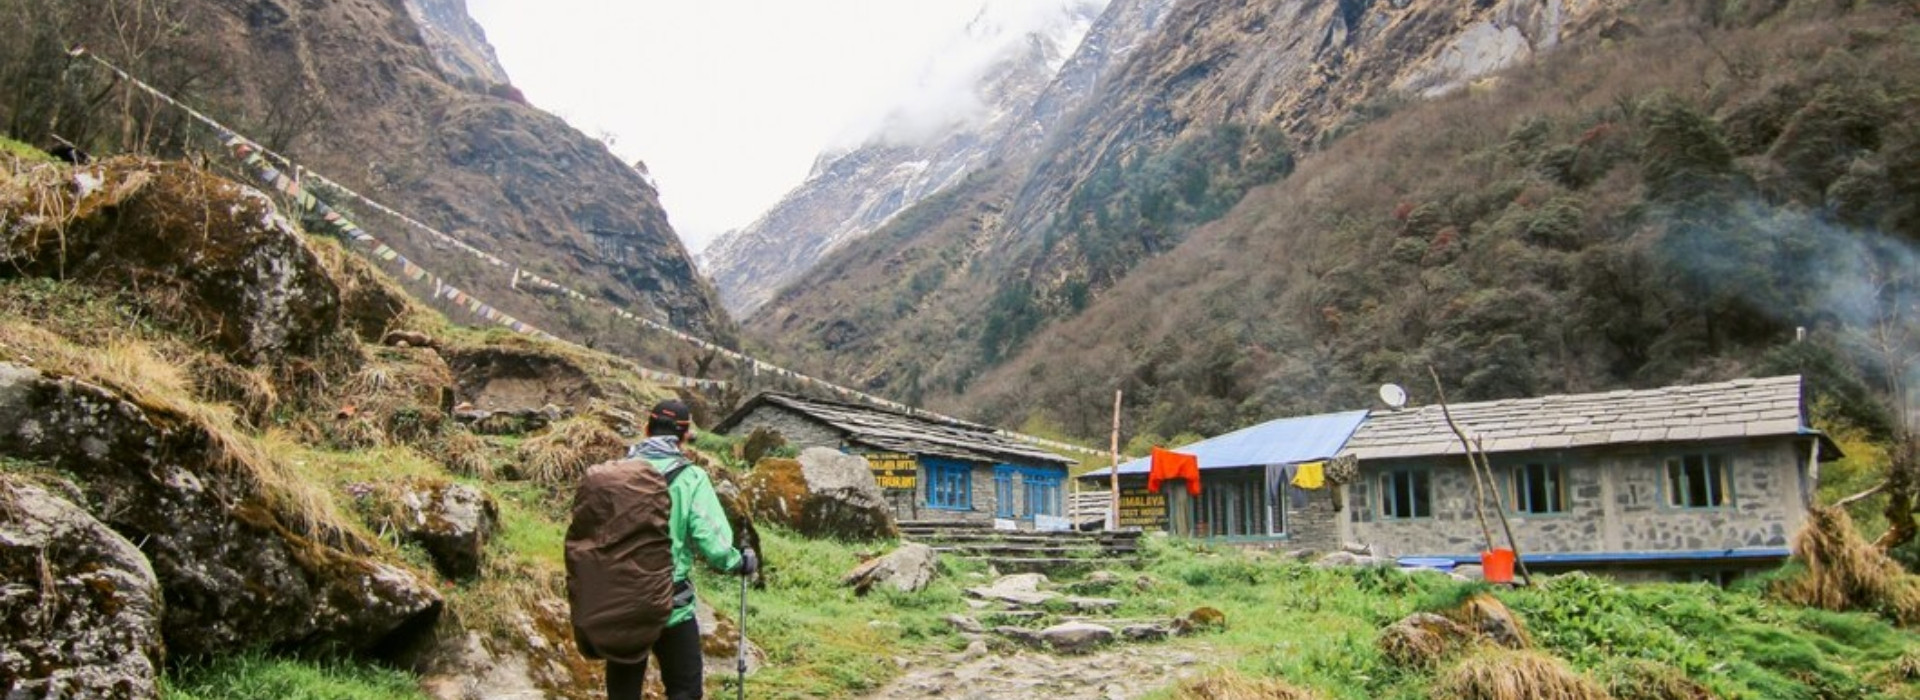 Trekking Packages in Nepal